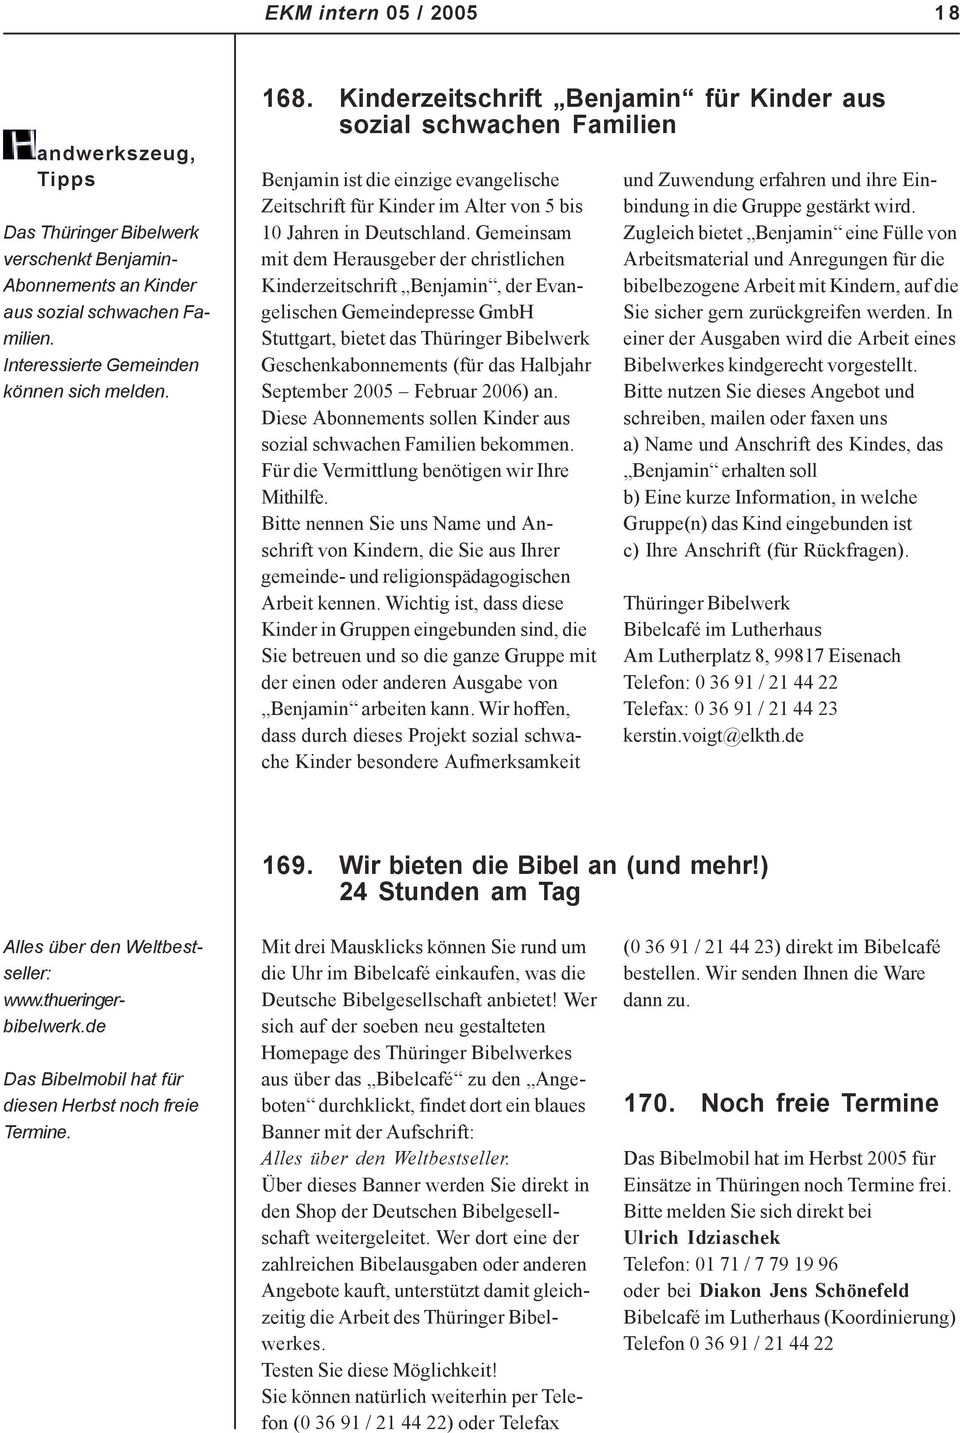 Gemeinsam mit dem Herausgeber der christlichen Kinderzeitschrift Benjamin, der Evangelischen Gemeindepresse GmbH Stuttgart, bietet das Thüringer Bibelwerk Geschenkabonnements (für das Halbjahr